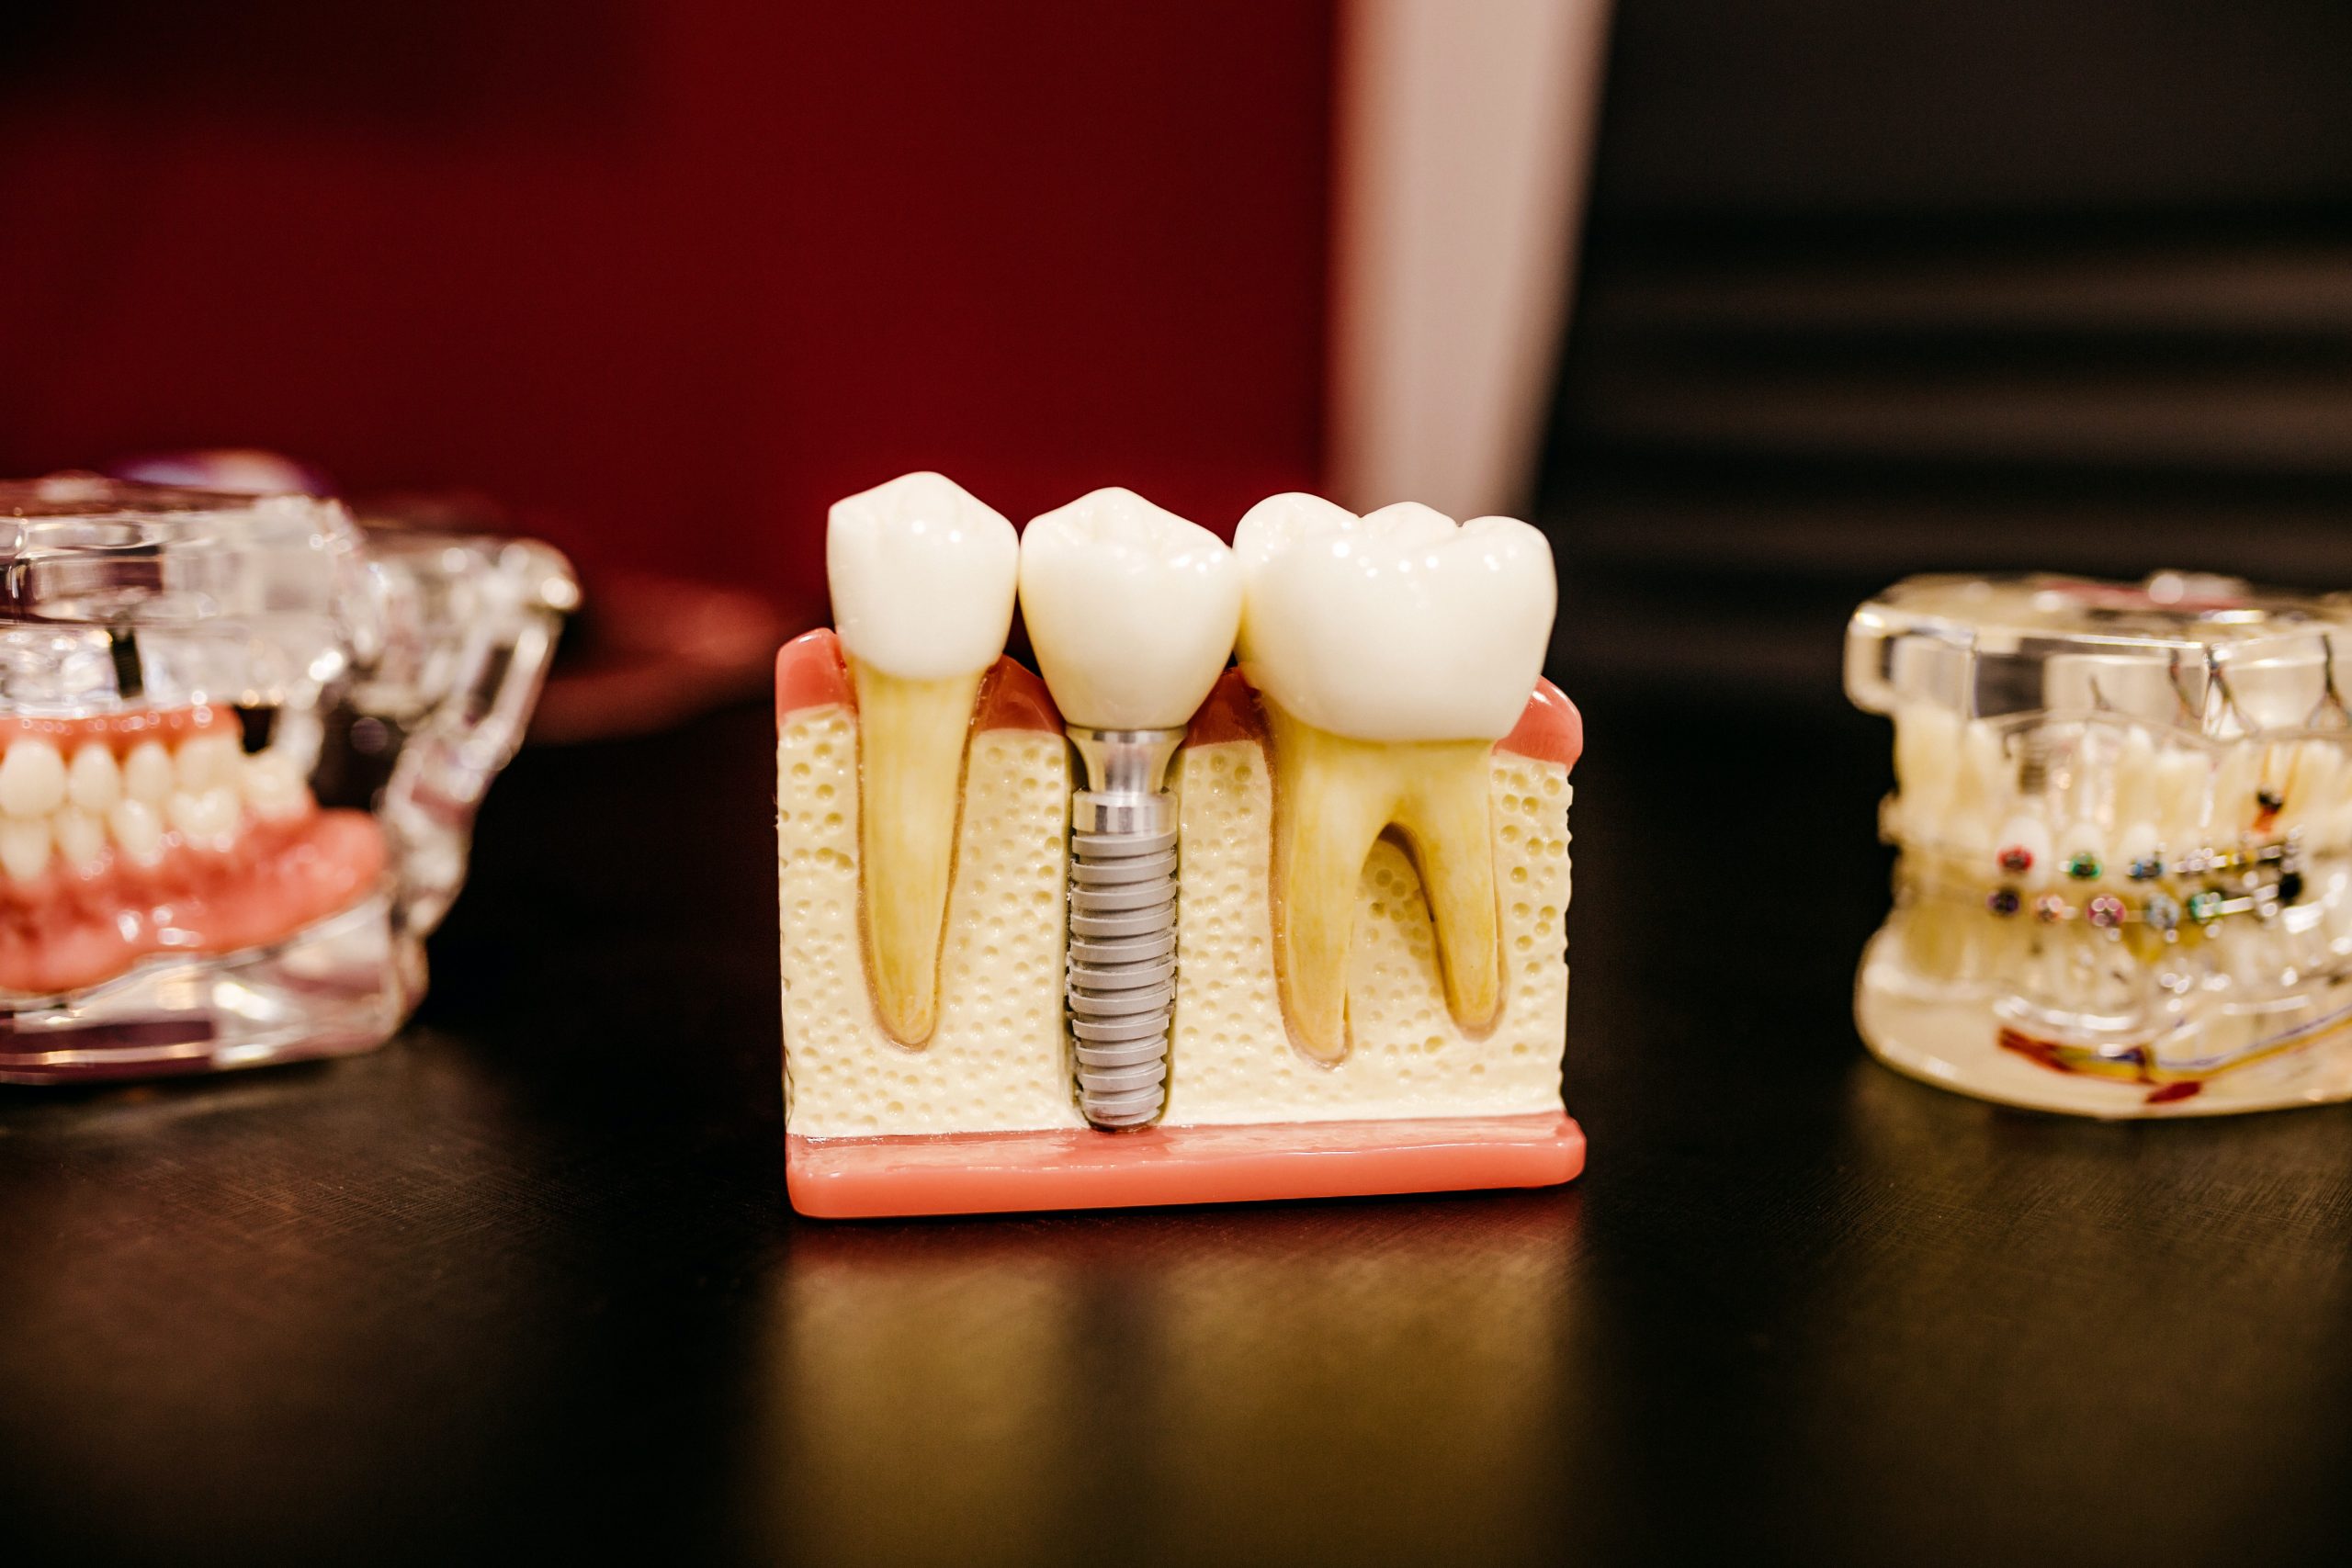 dentistry trends 2023 2022 dental orthodontics trending